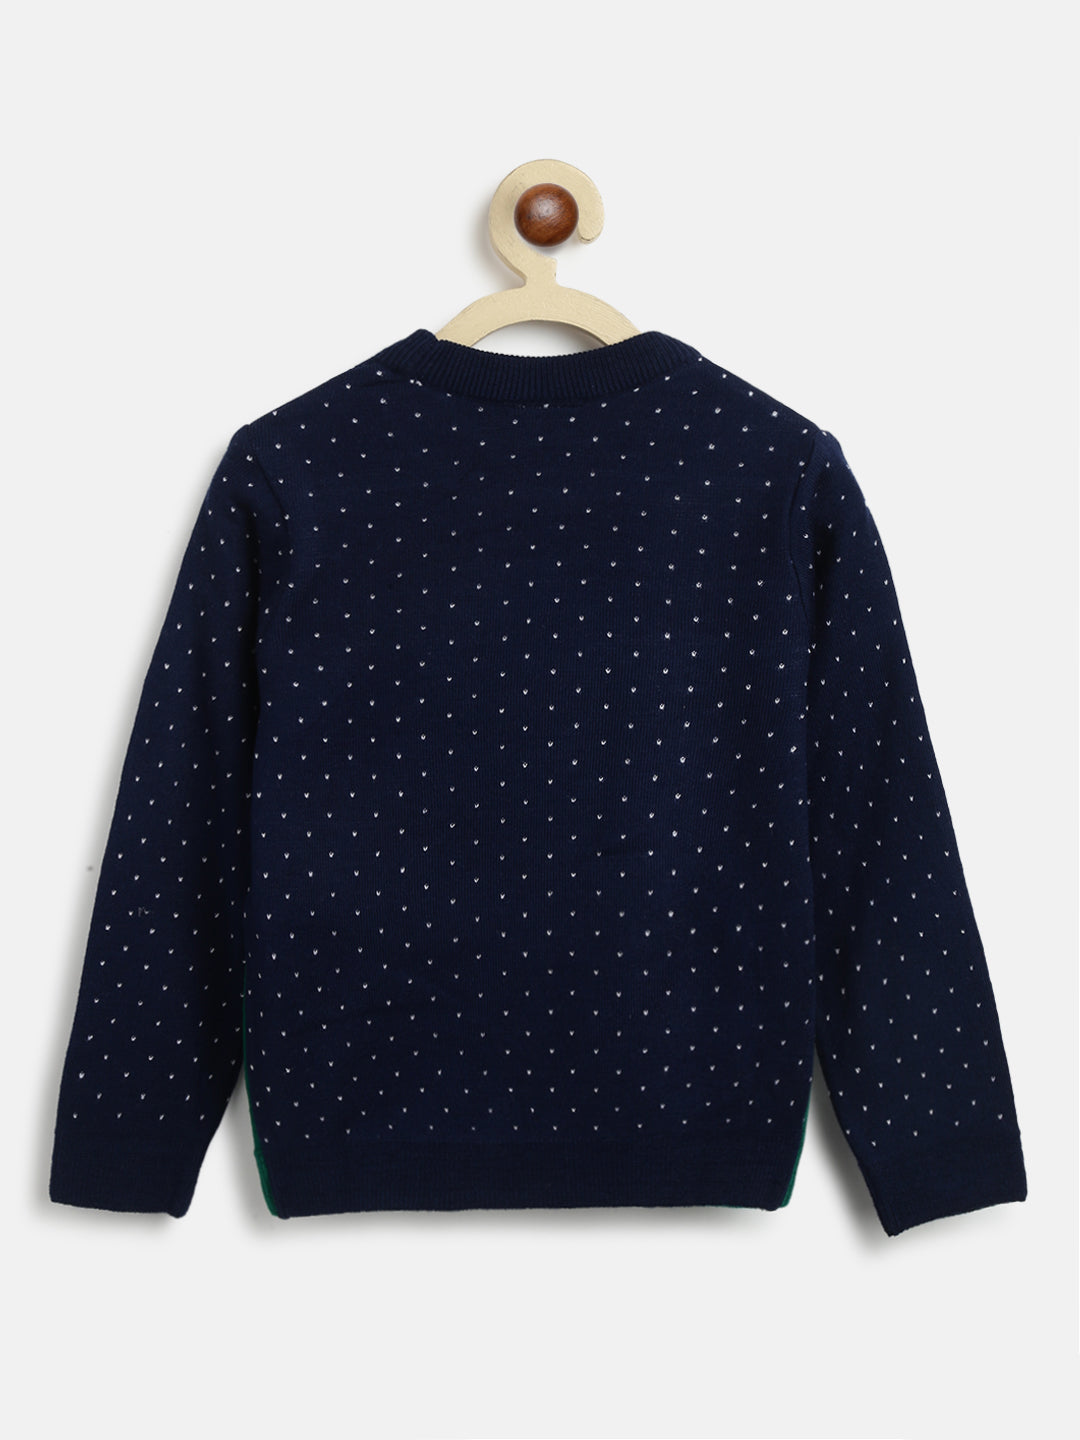 Nautinati Boys Navy Blue Animal Printed Pullover Sweater